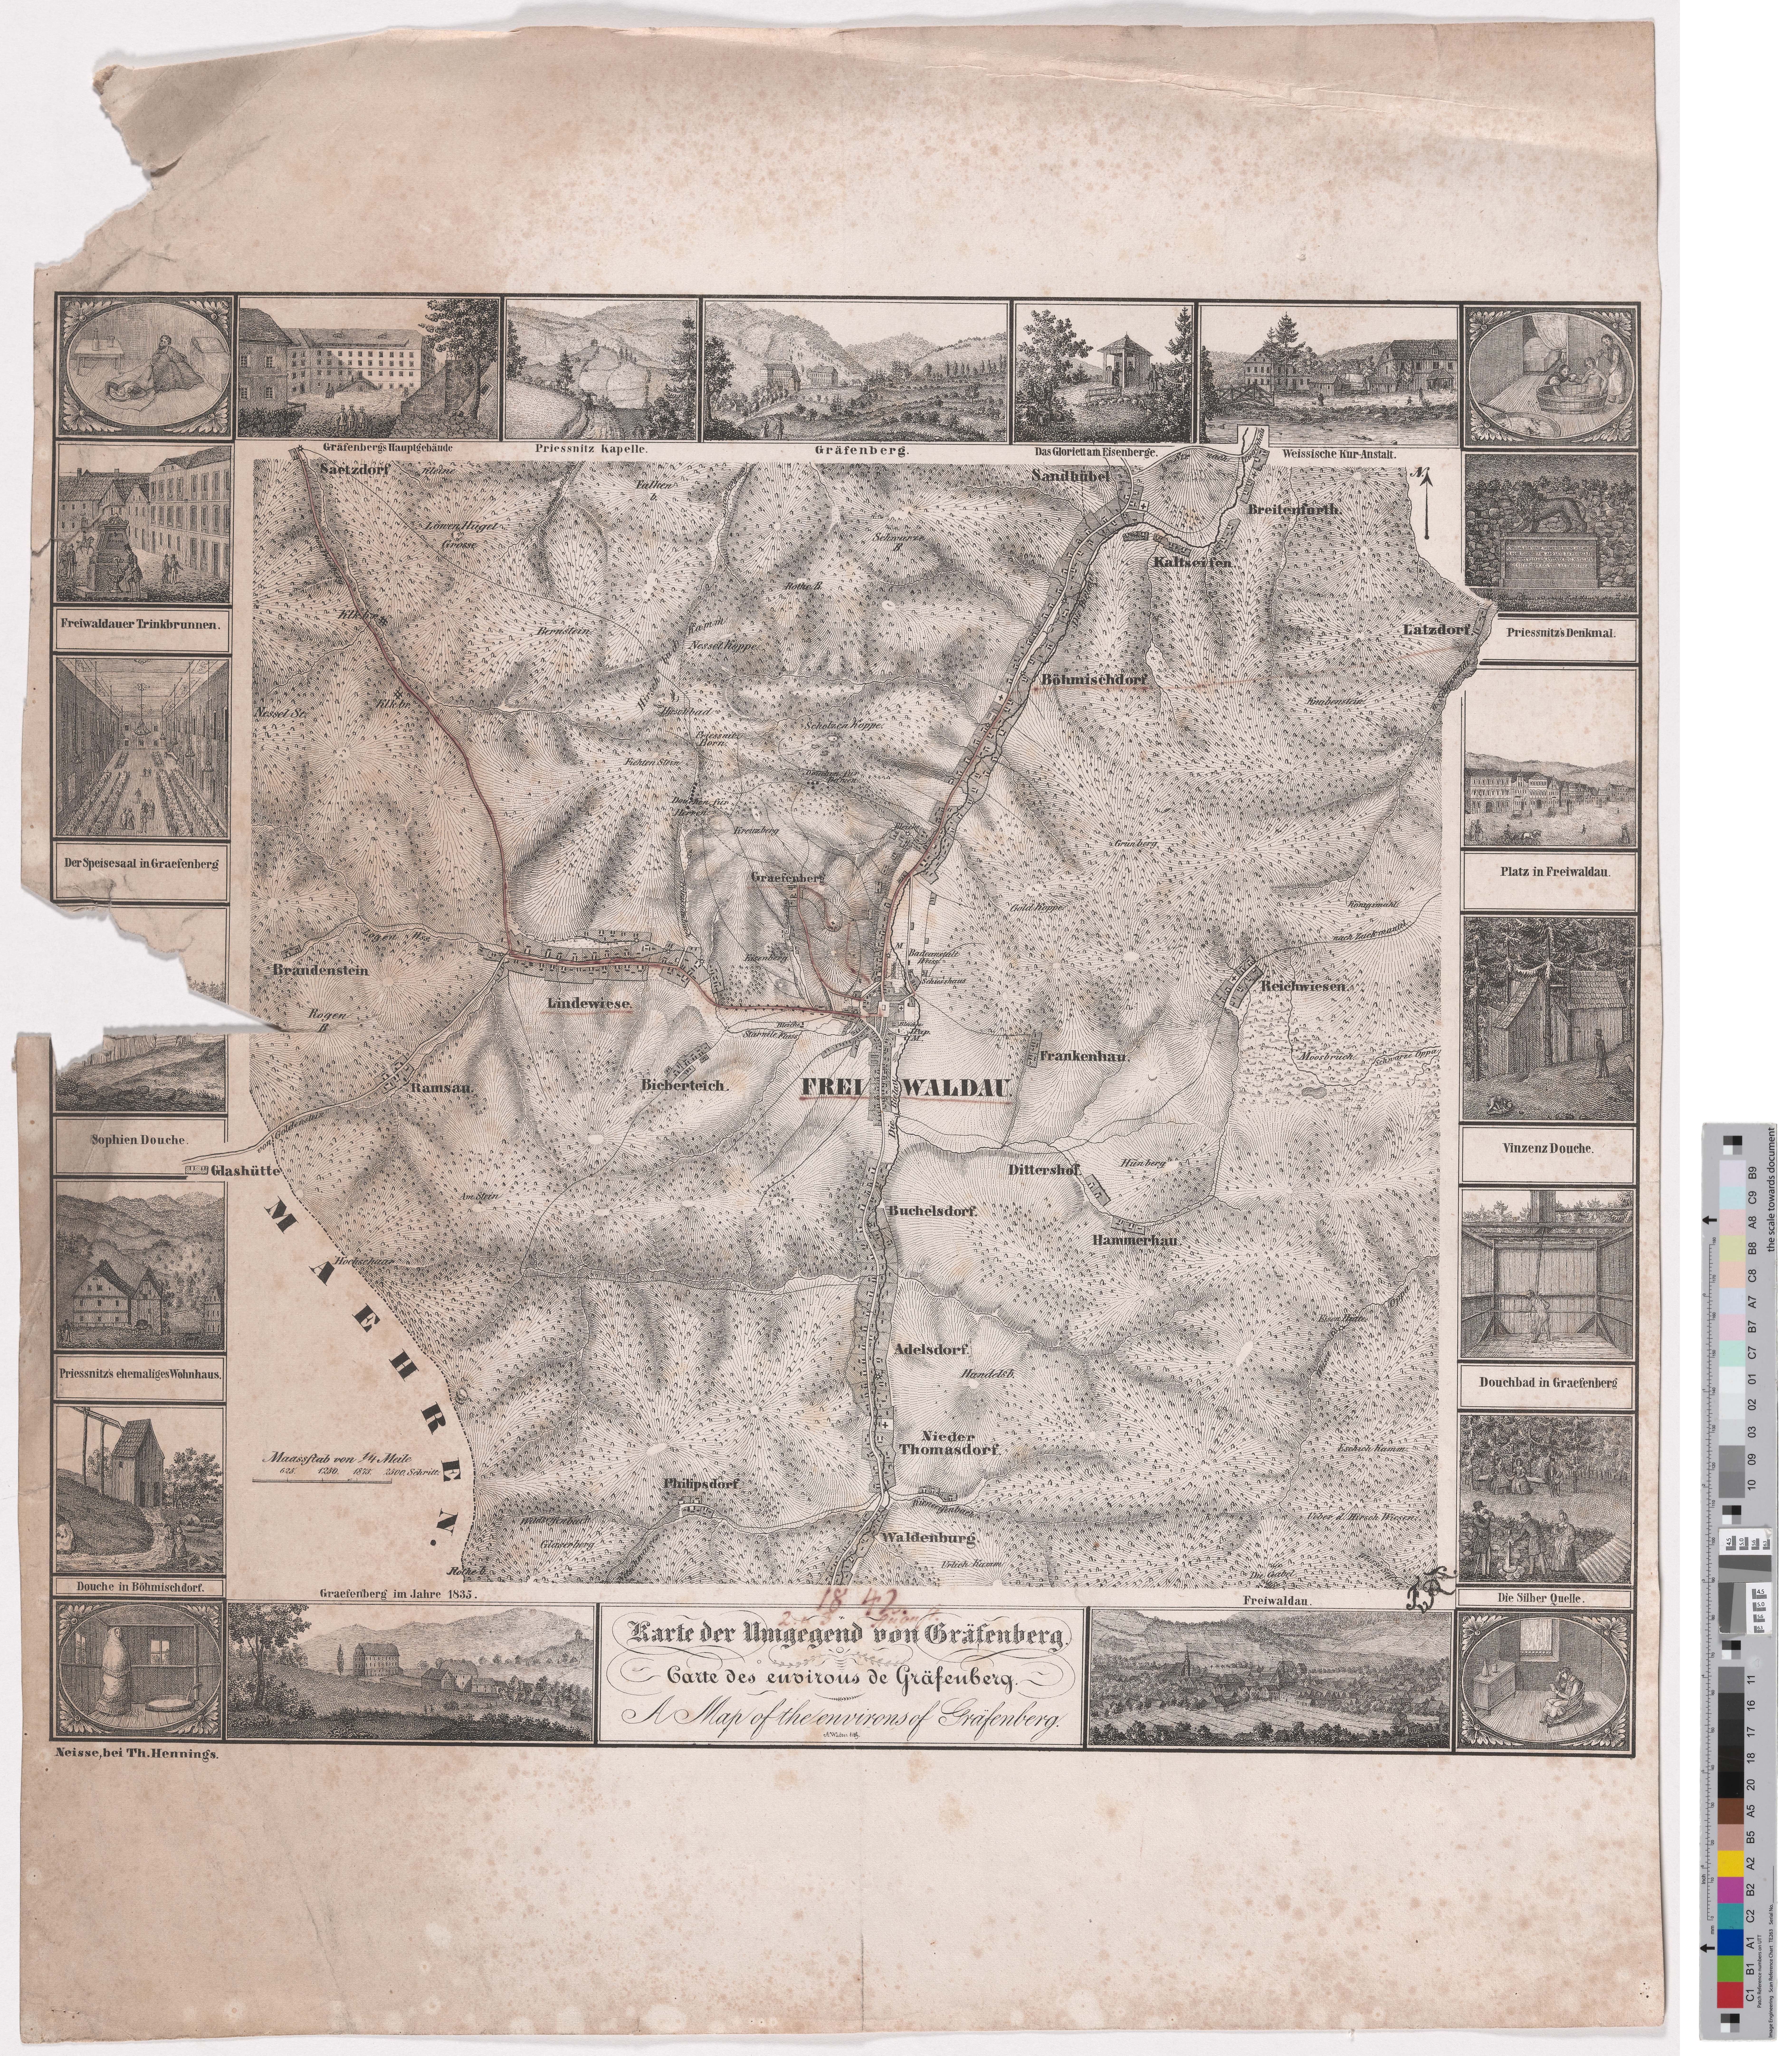 Landkarte "Karte der Umgegend von Gräfenberg" (Kreismuseum Grimma RR-F)